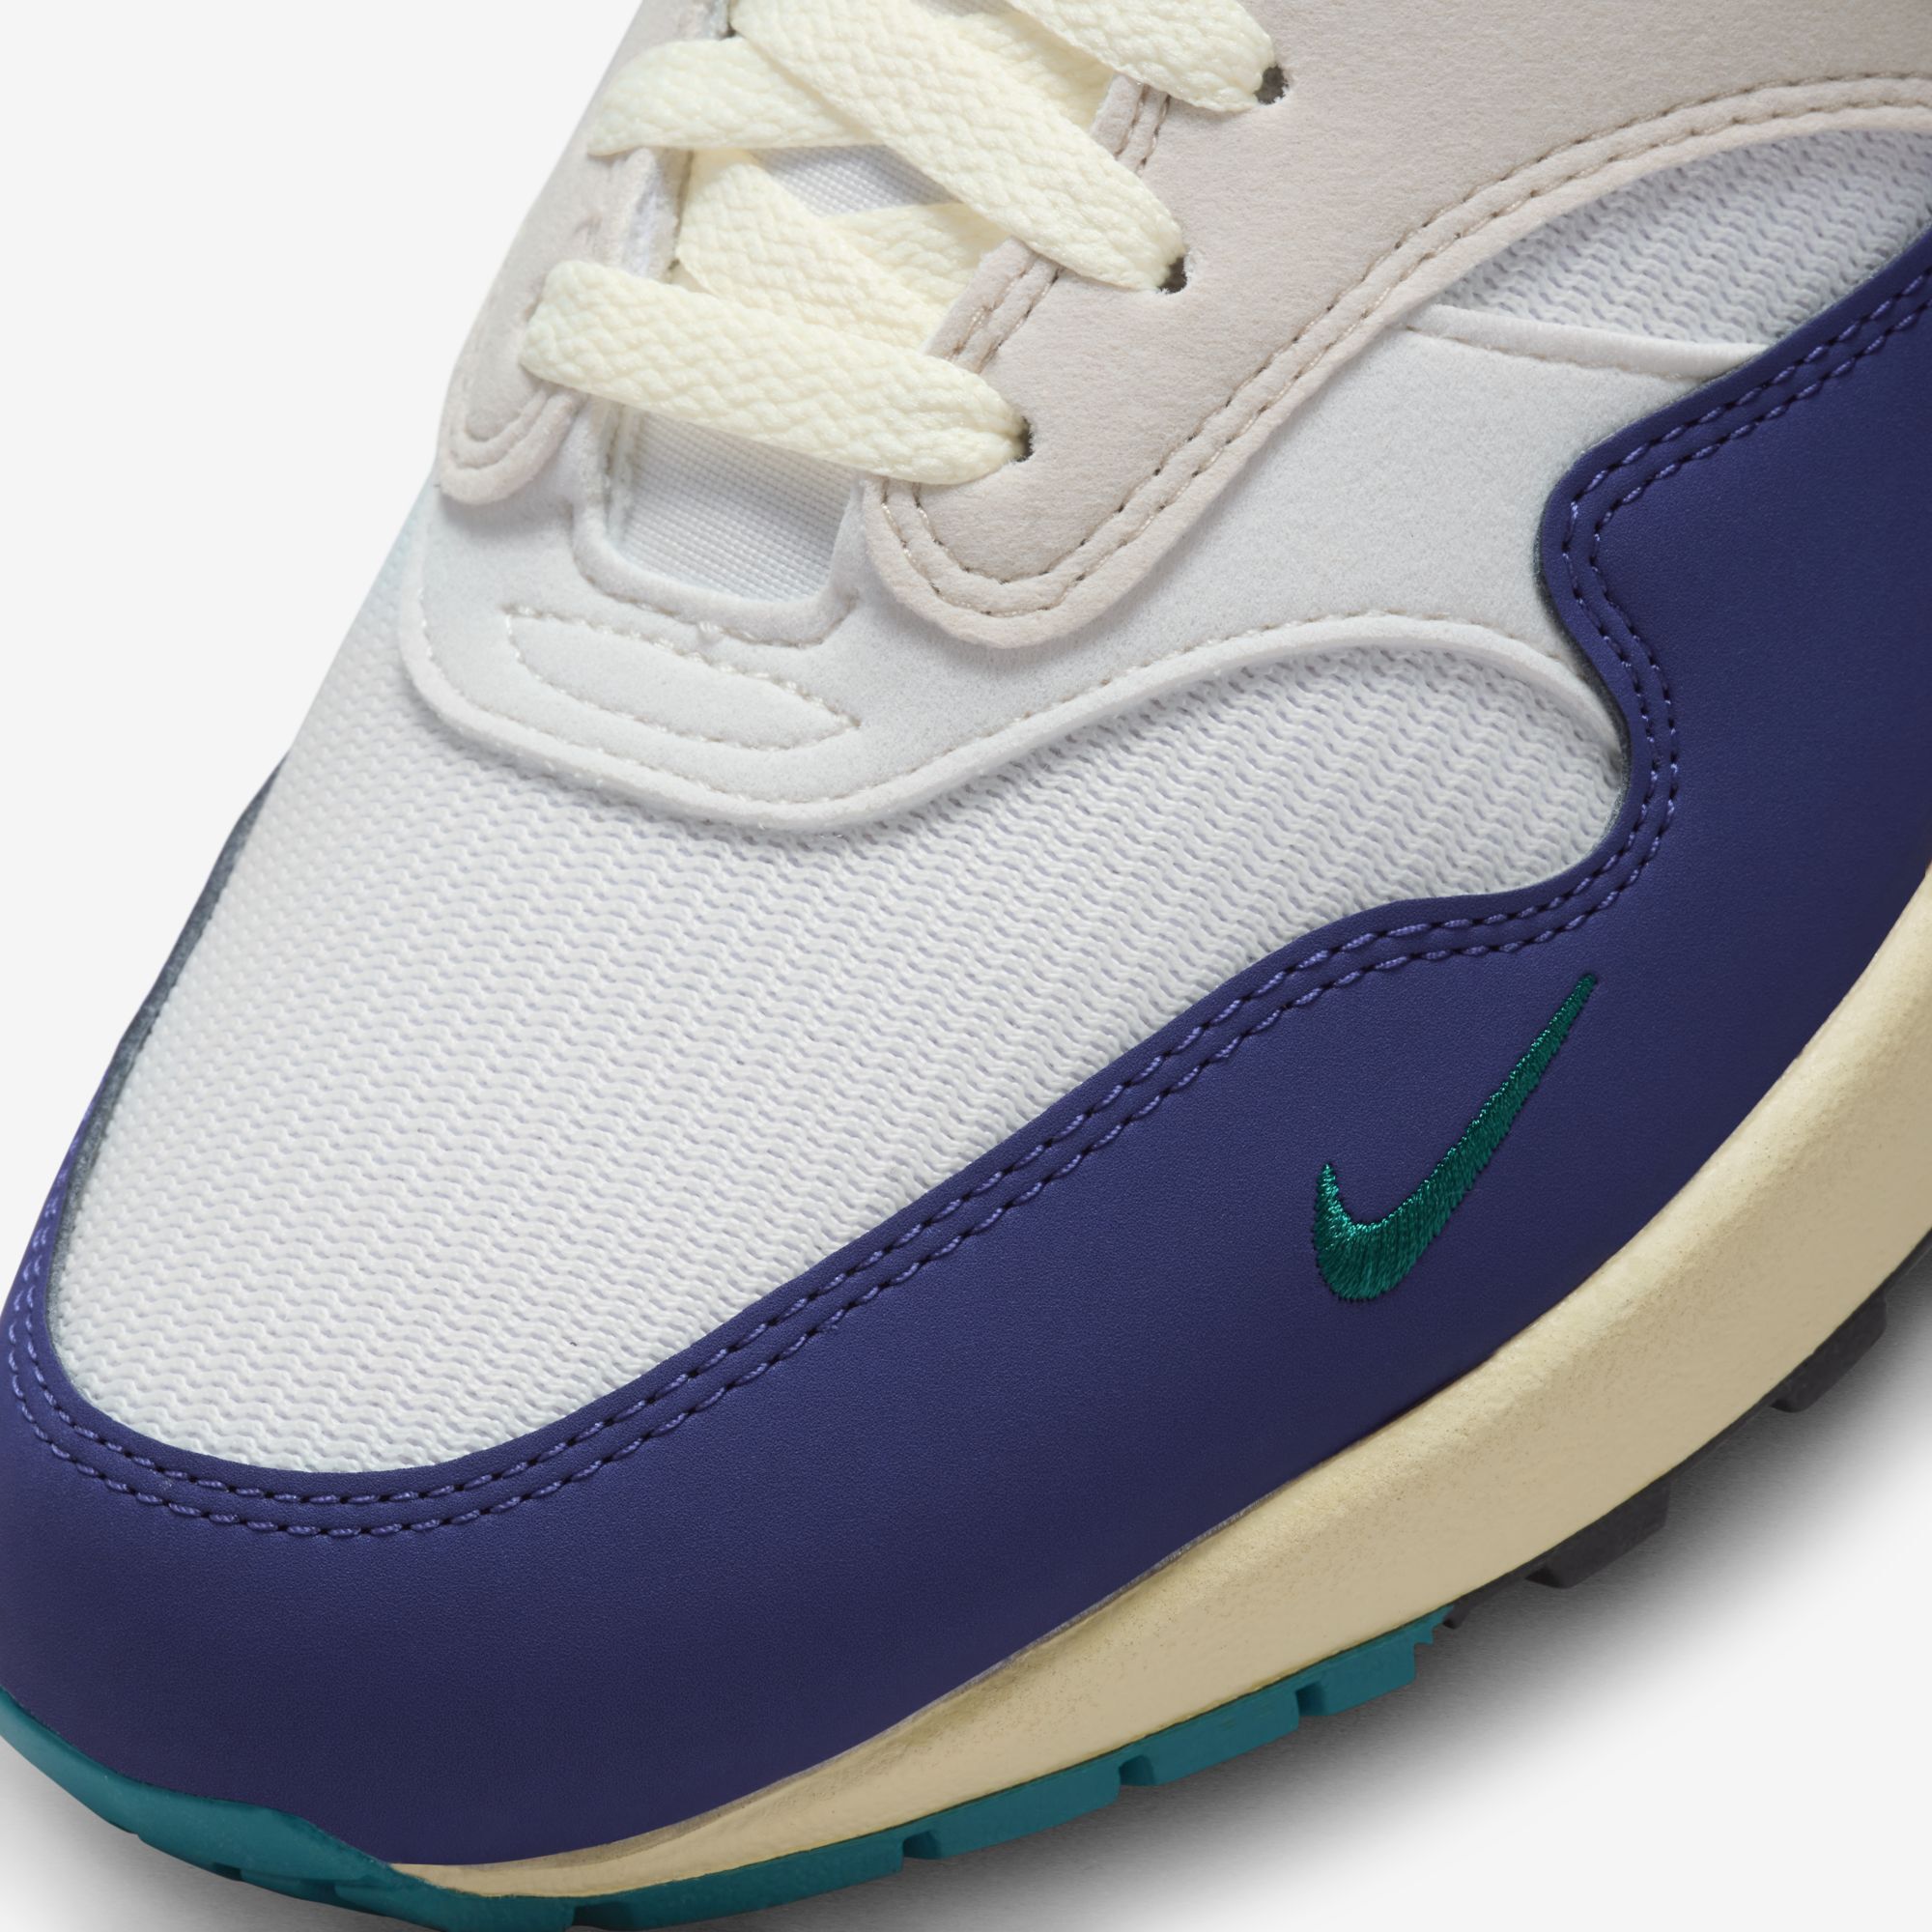 Nike Air Max 1, Vela/Marrón verdoso claro/Fantasma/Azul royal intenso, hi-res